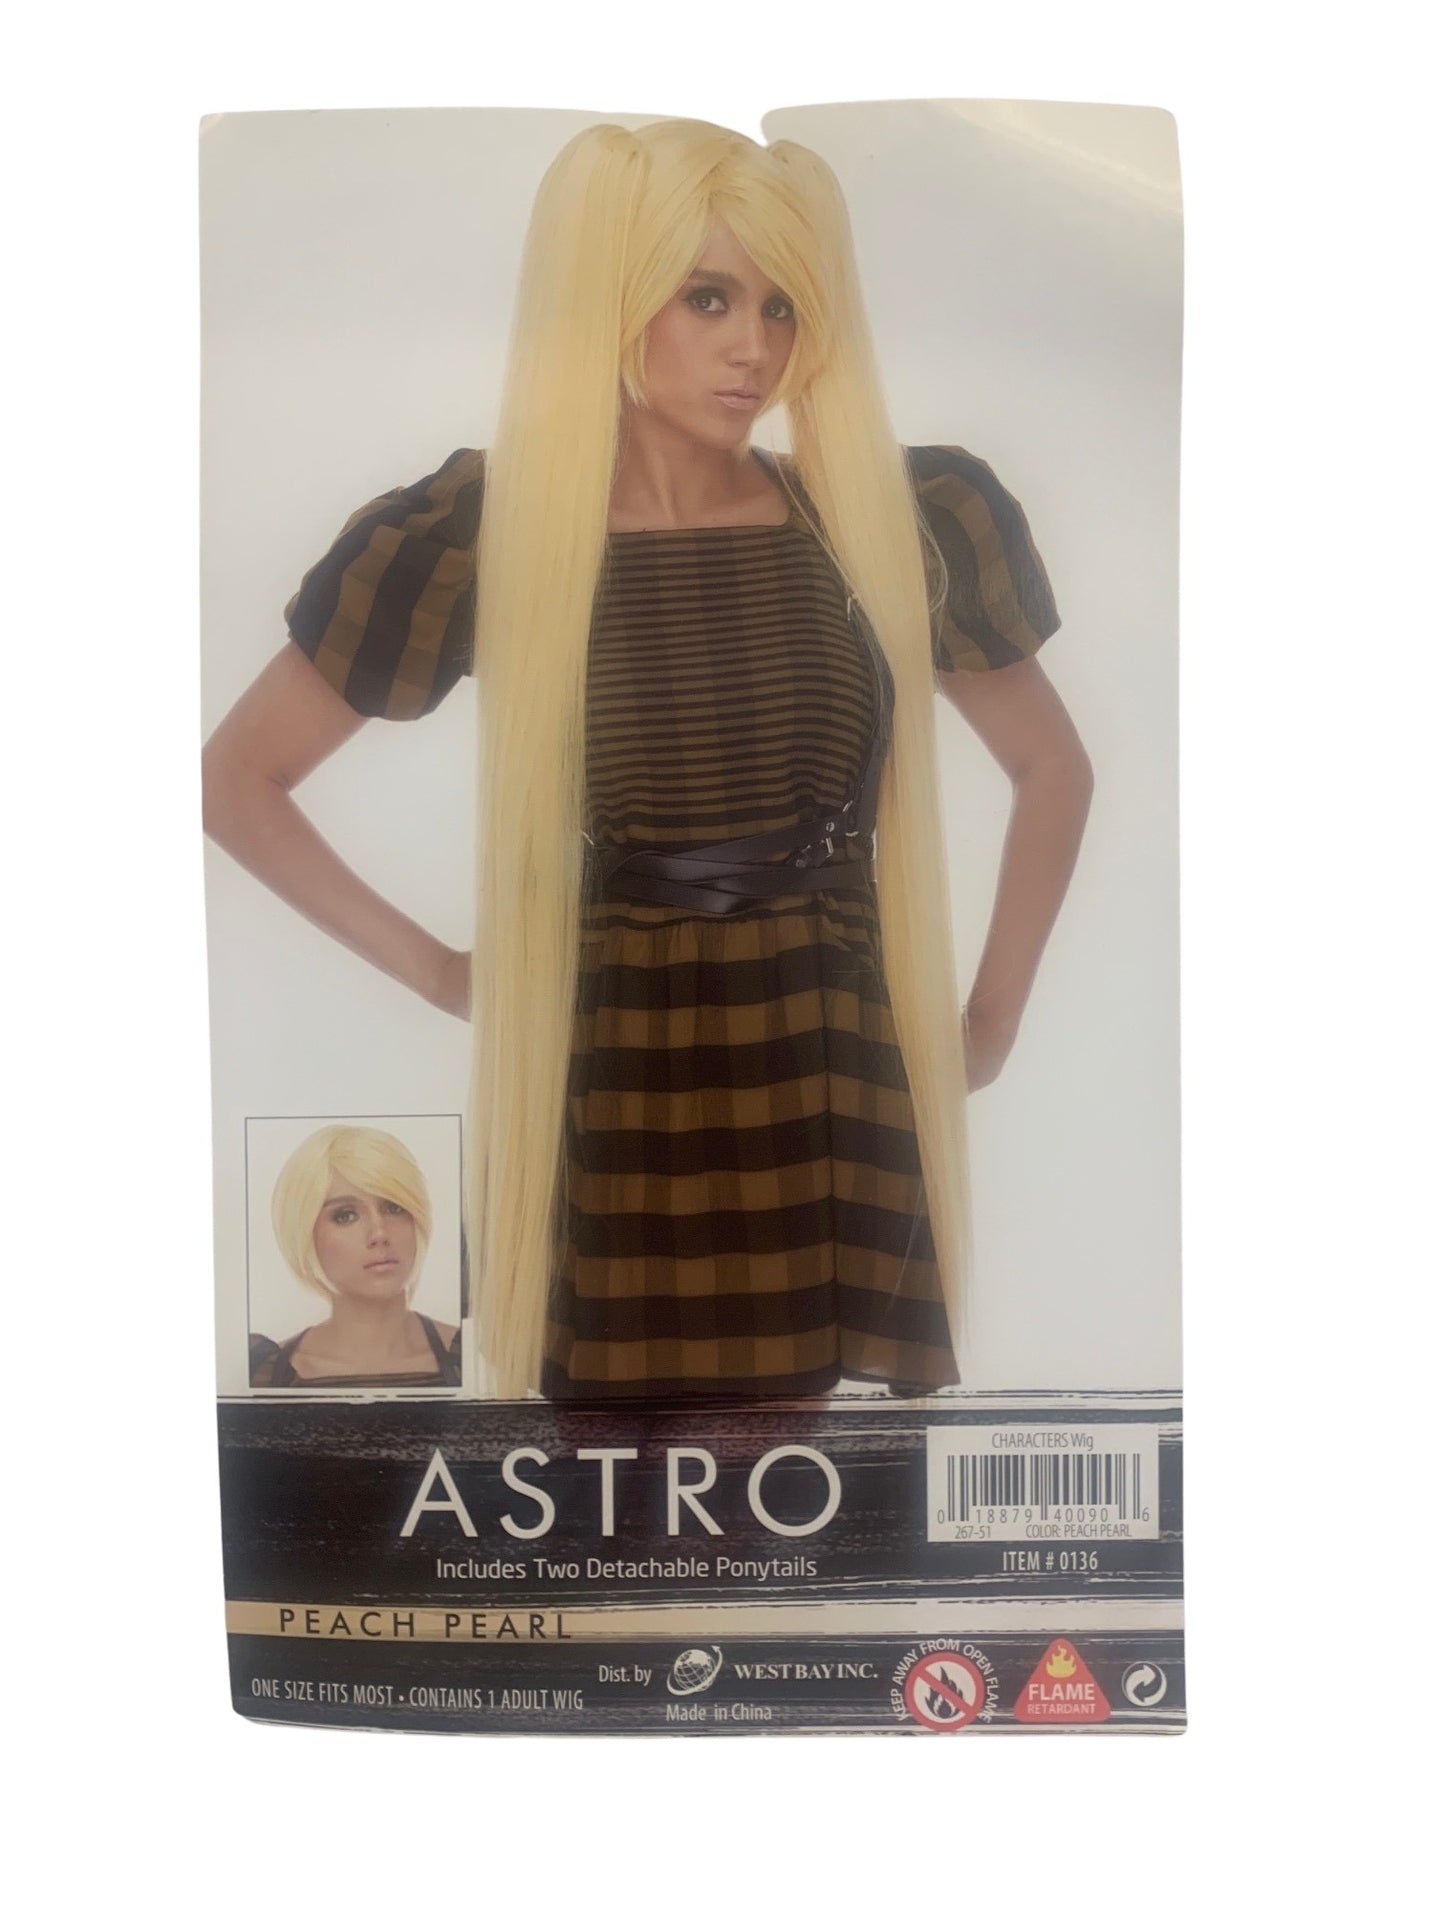 Astro wig - blonde